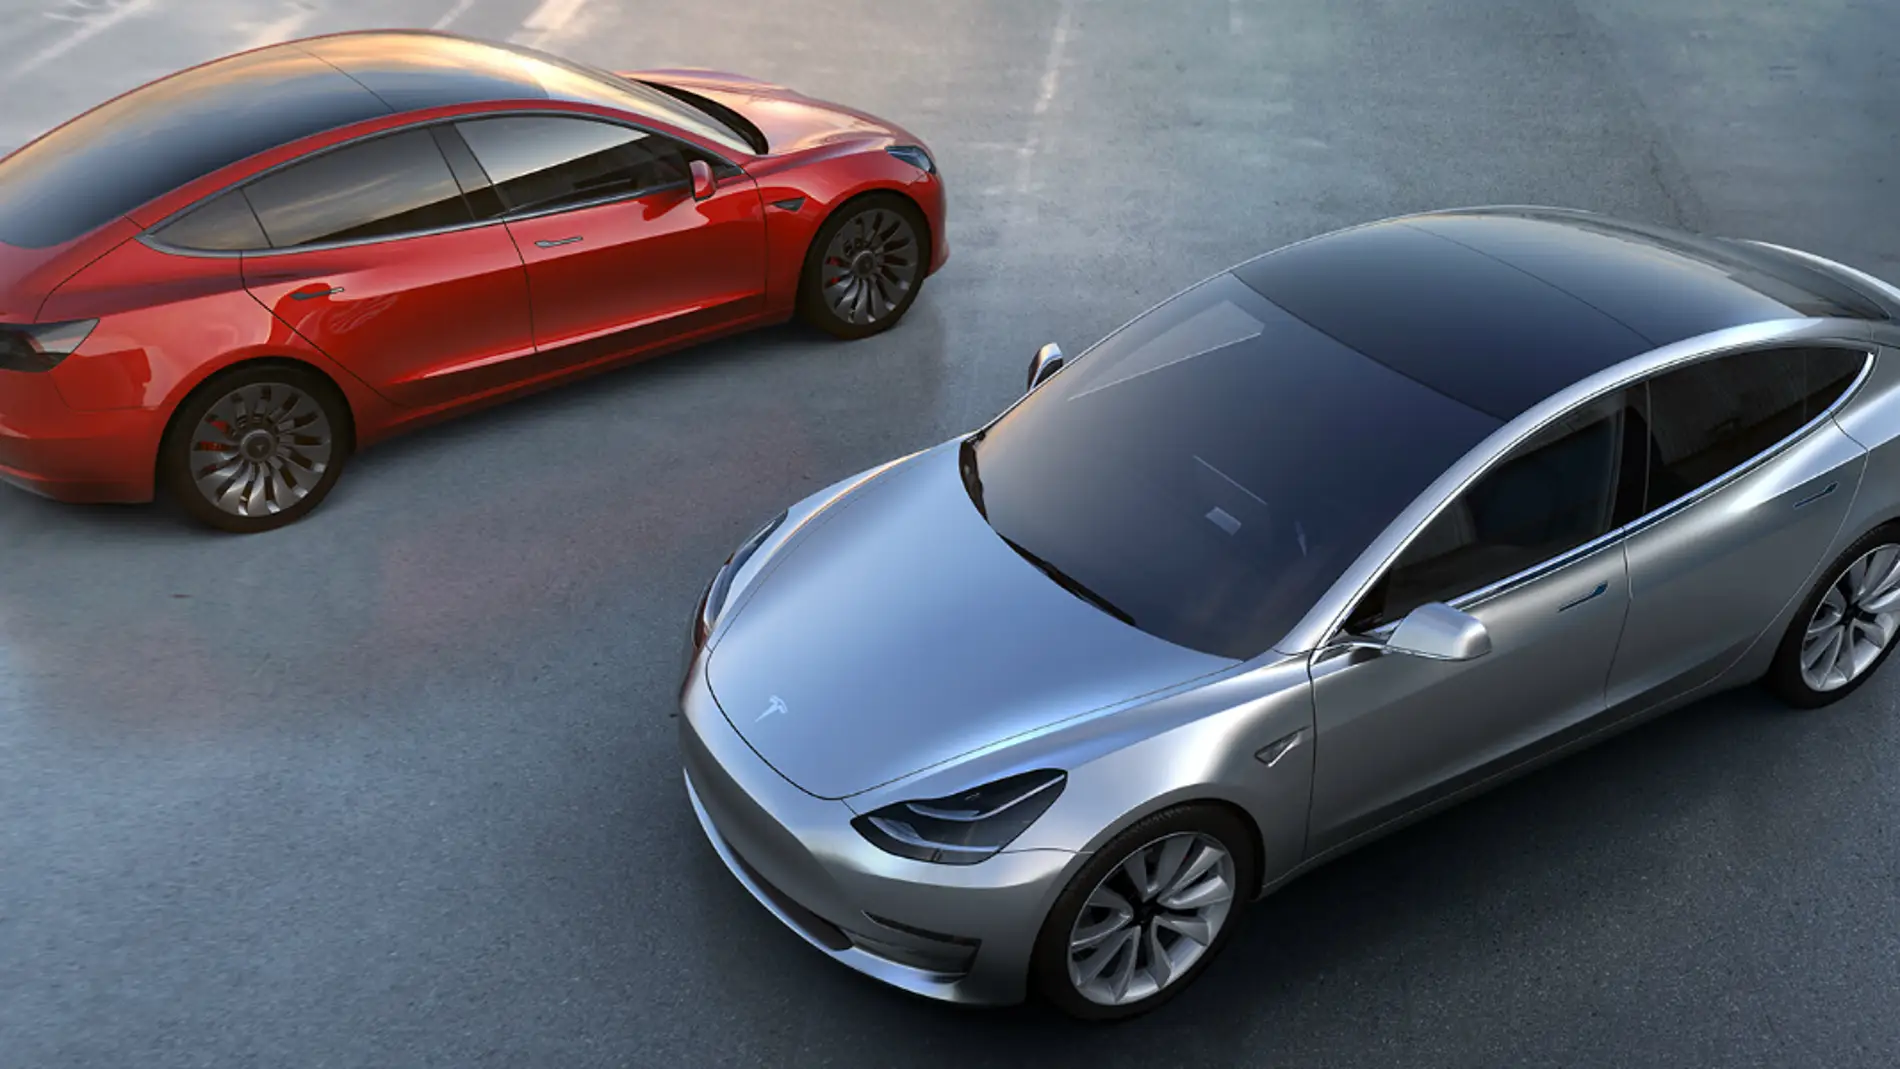 El Model 3 es el coche eléctrico más buscado en Google, además del más vendido